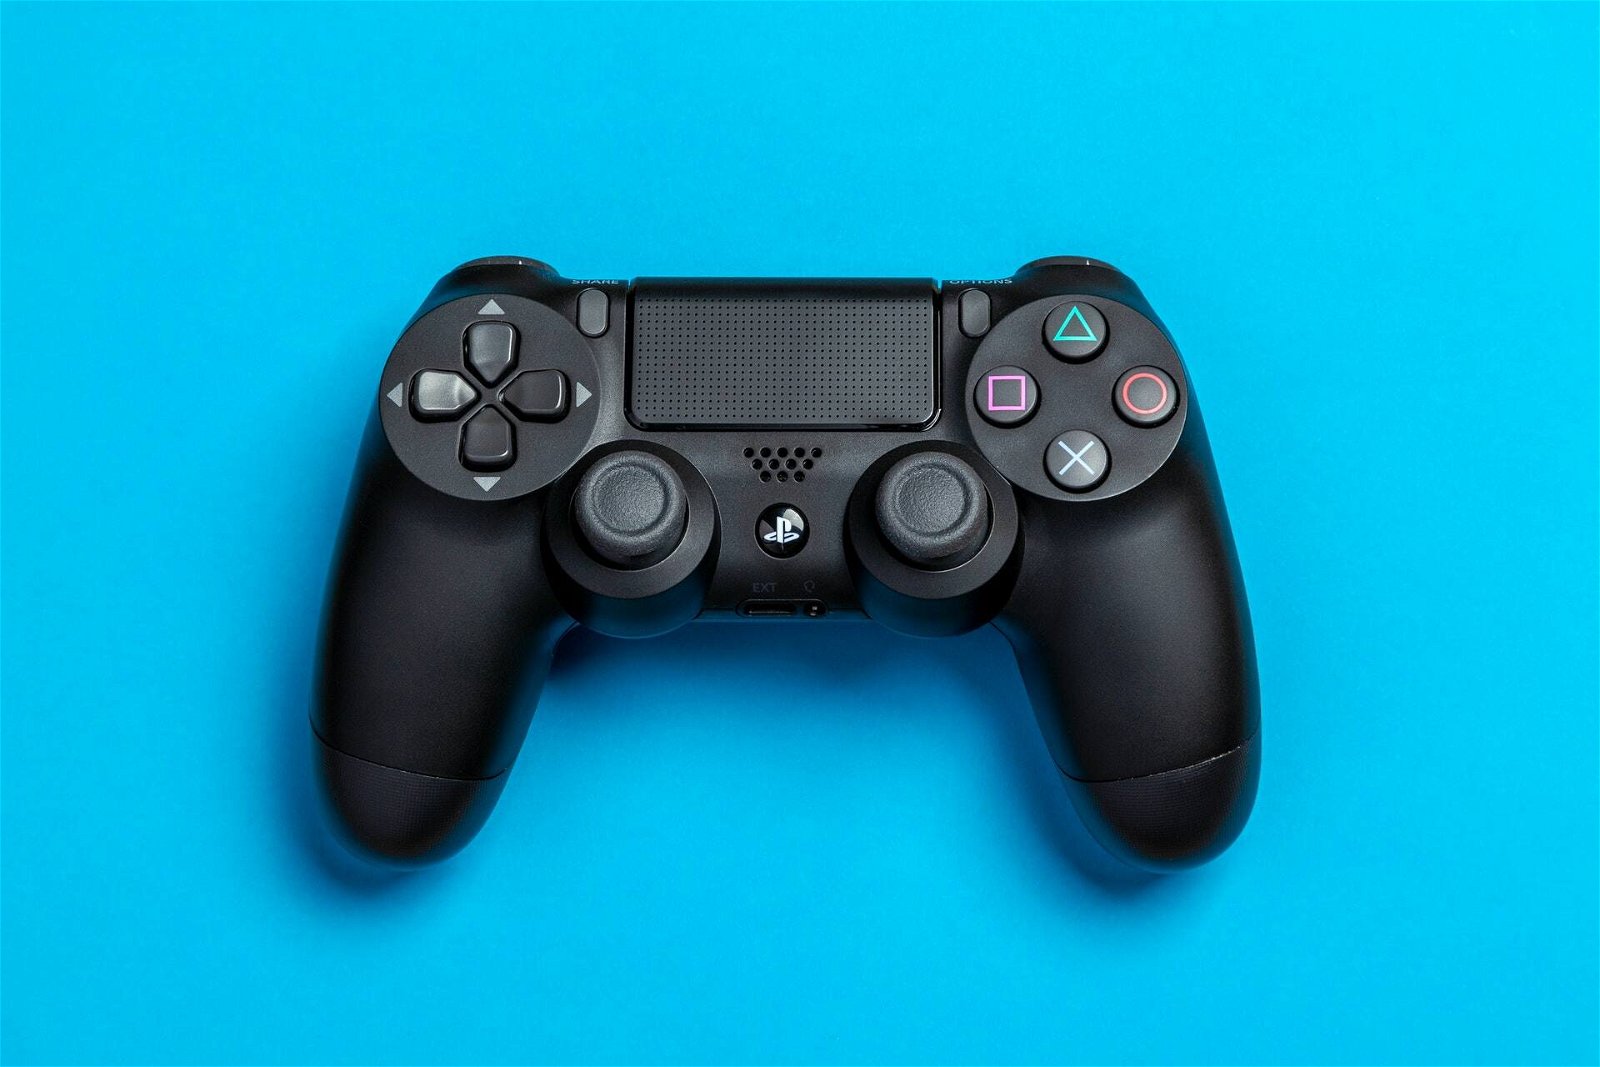 PS4, giocare senza un controller wireless può causare incidenti... curiosi